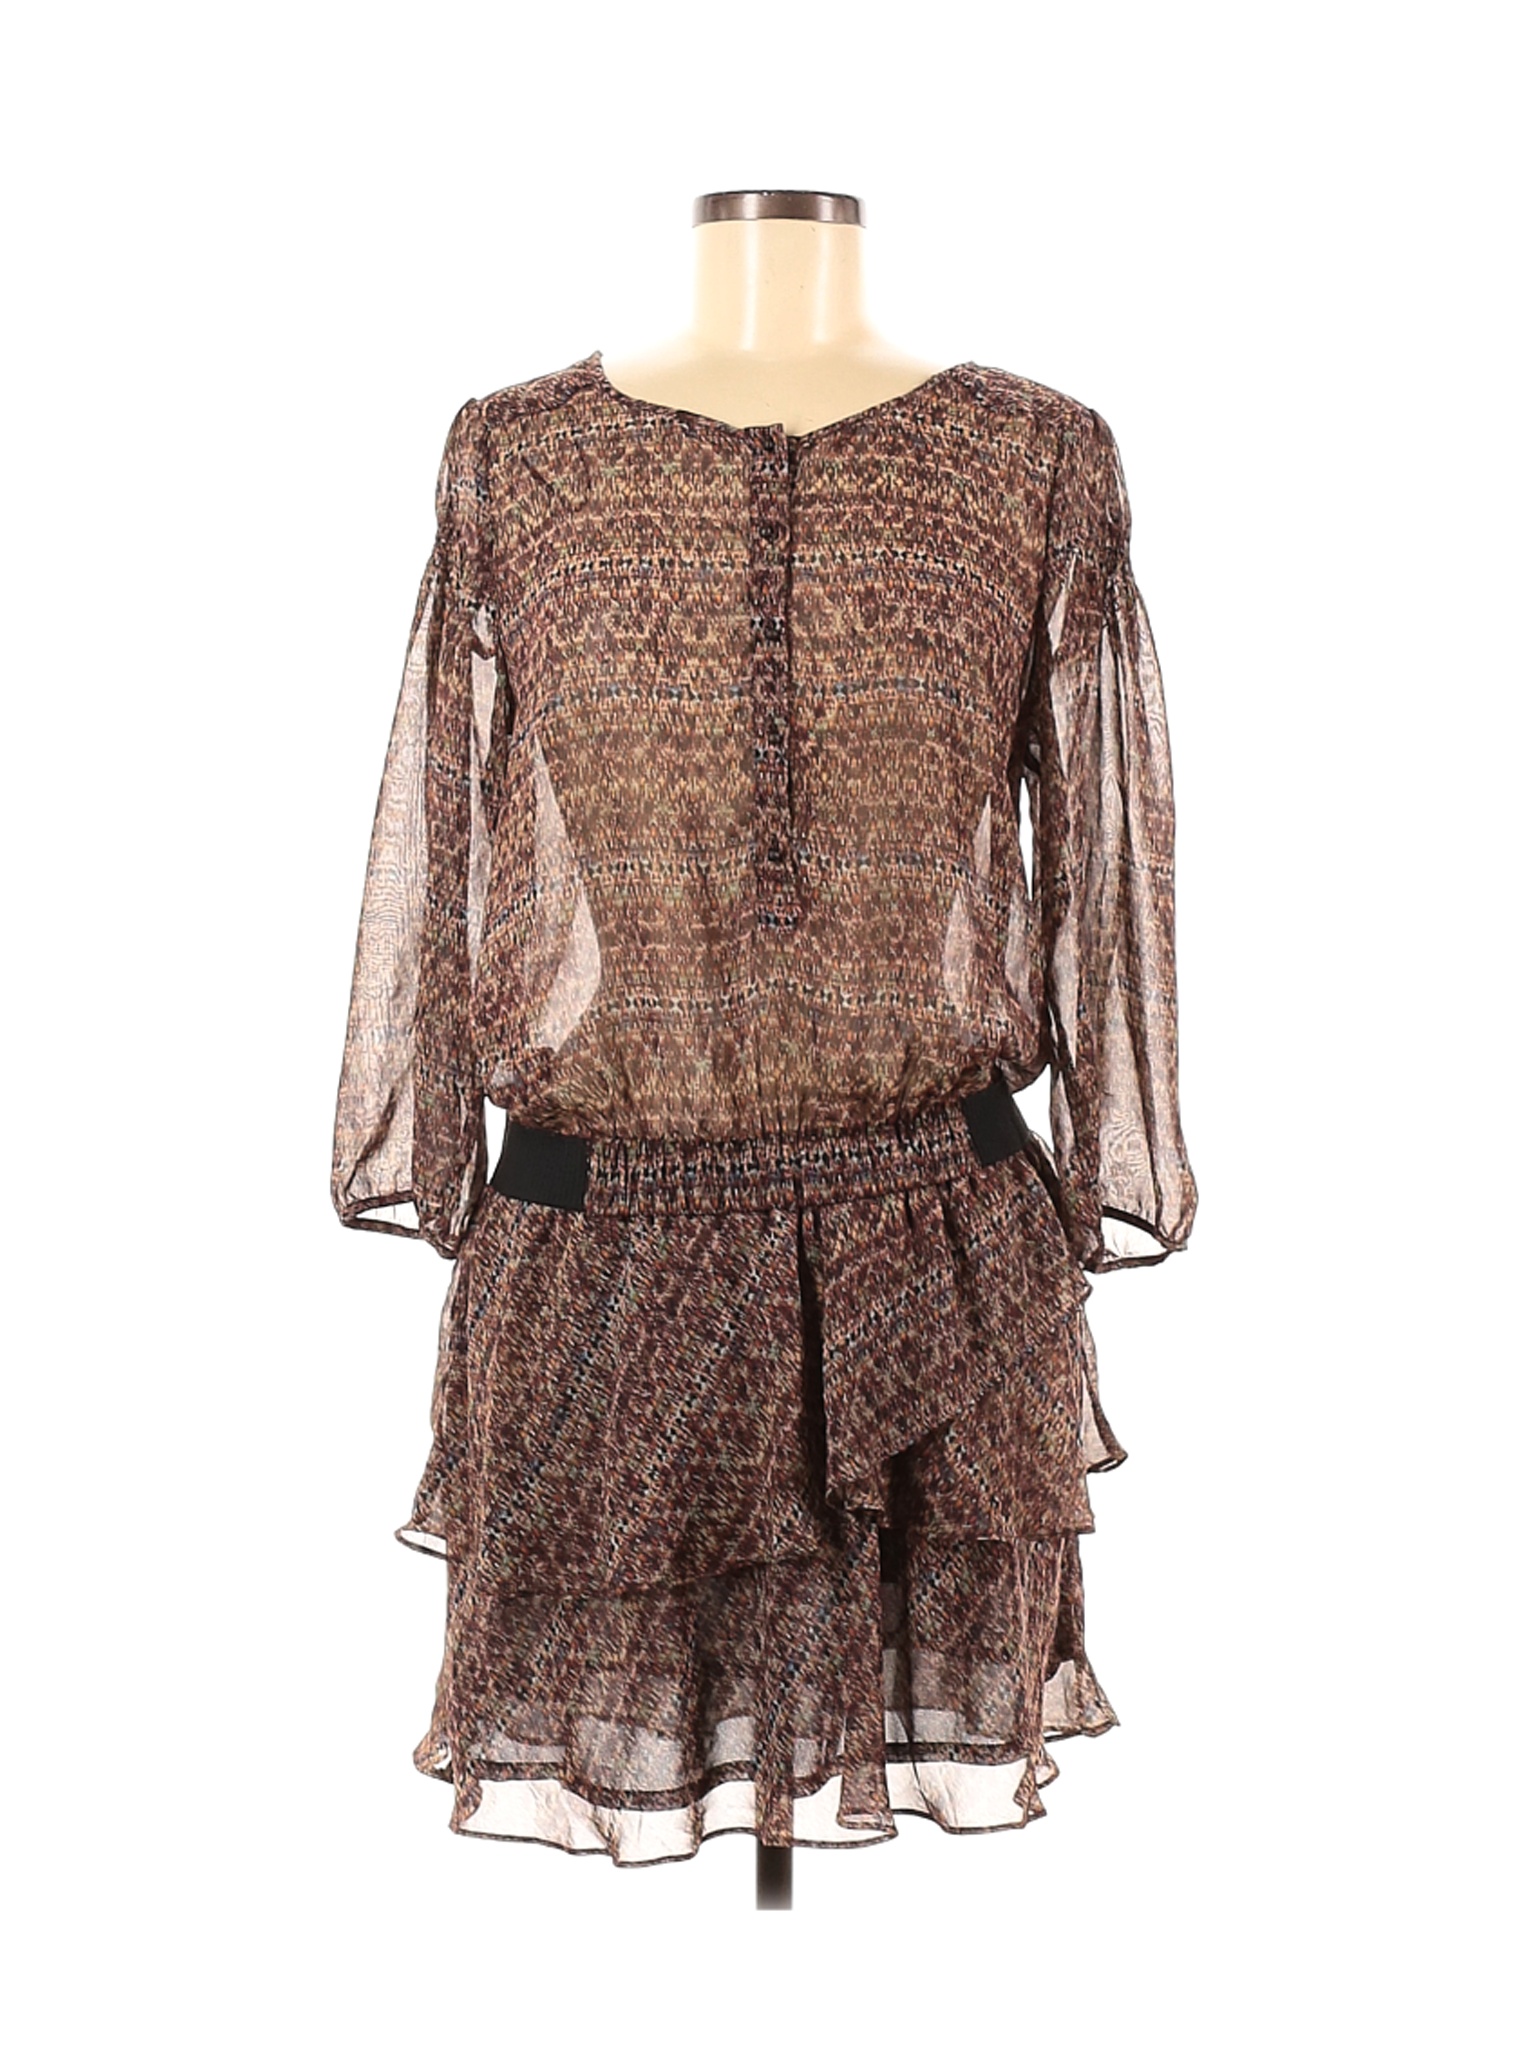 Zara Basic Women Brown Casual Dress M | eBay